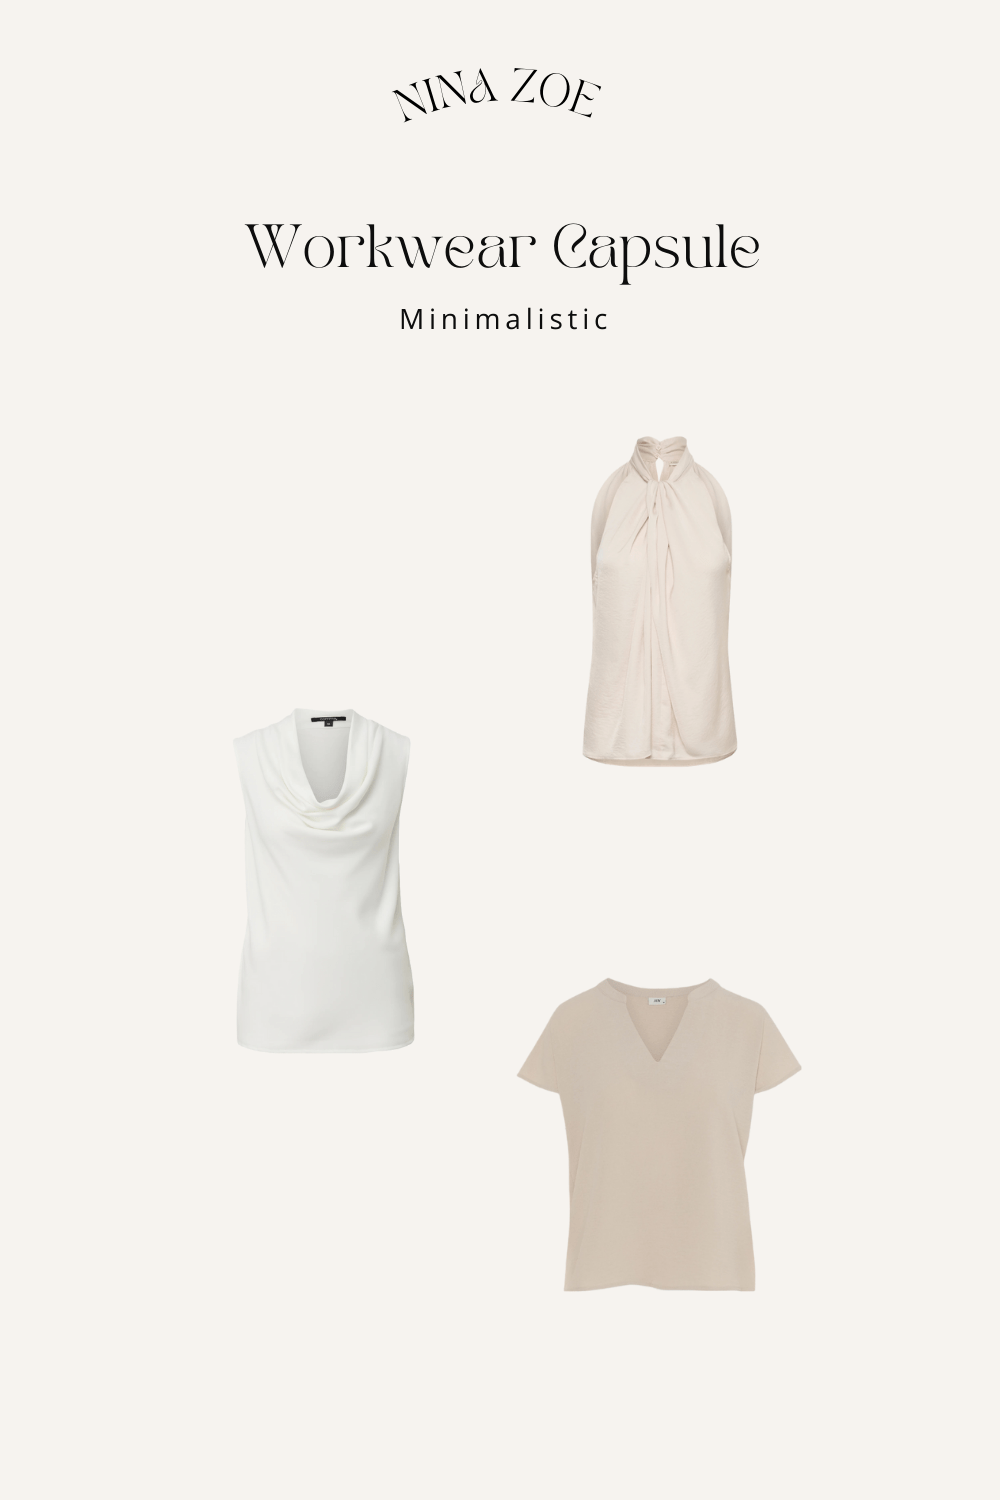 Leichte Tops schicke Tops Capsule Wardrobe Bestandteil für ein sommerliches Businessoutfir in weiß und beige